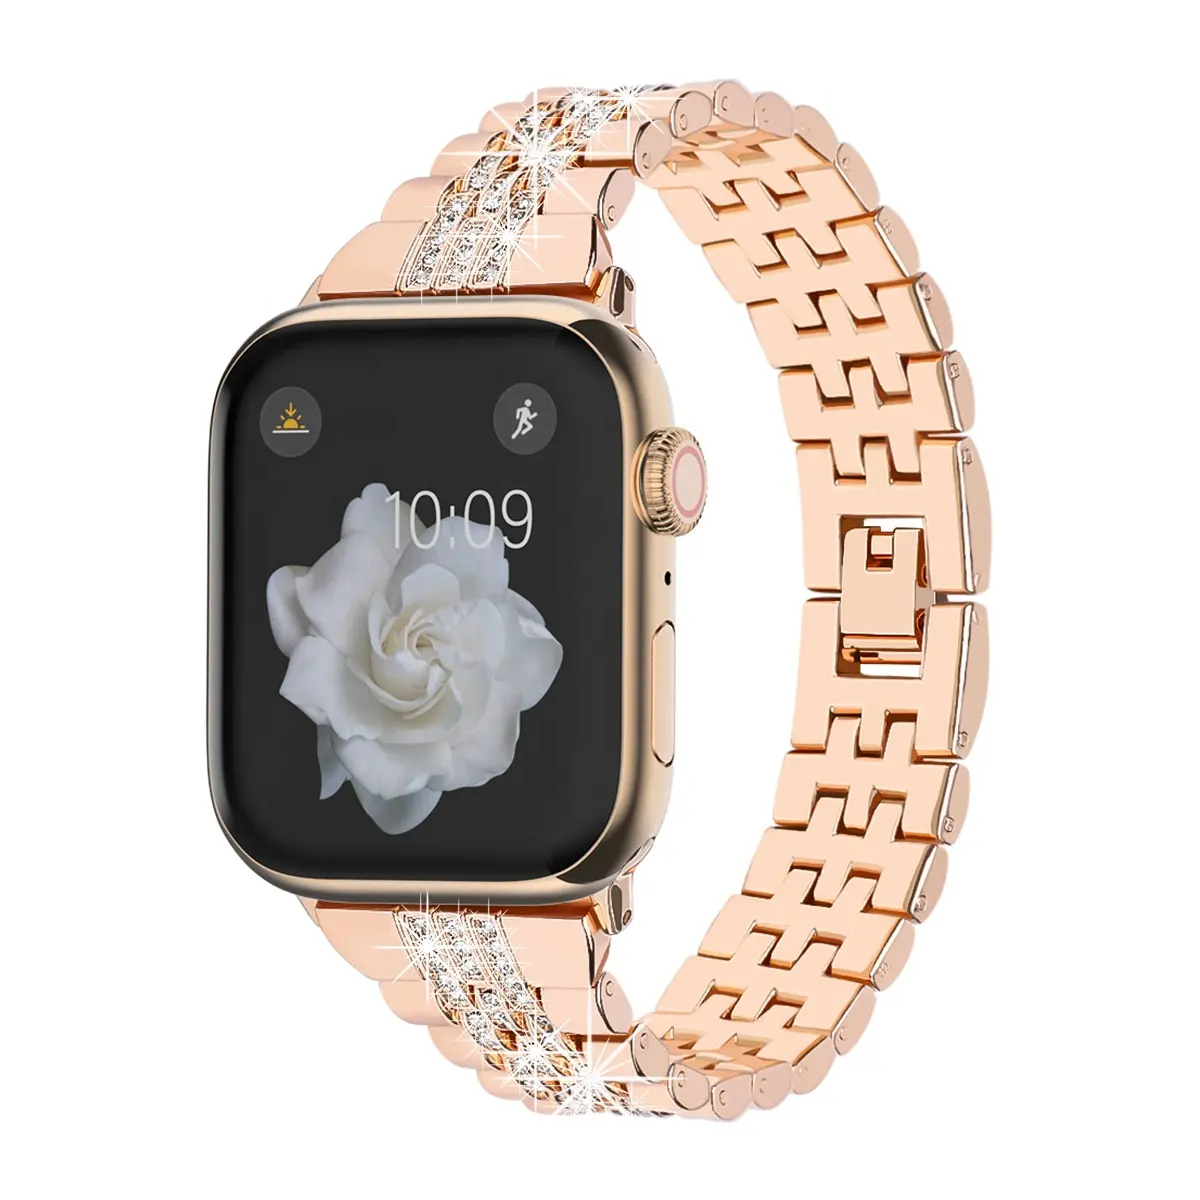 Apple Watch iWatch 시리즈 용 럭셔리 다이아몬드 팔찌 스테인레스 스틸 스트랩 밴드